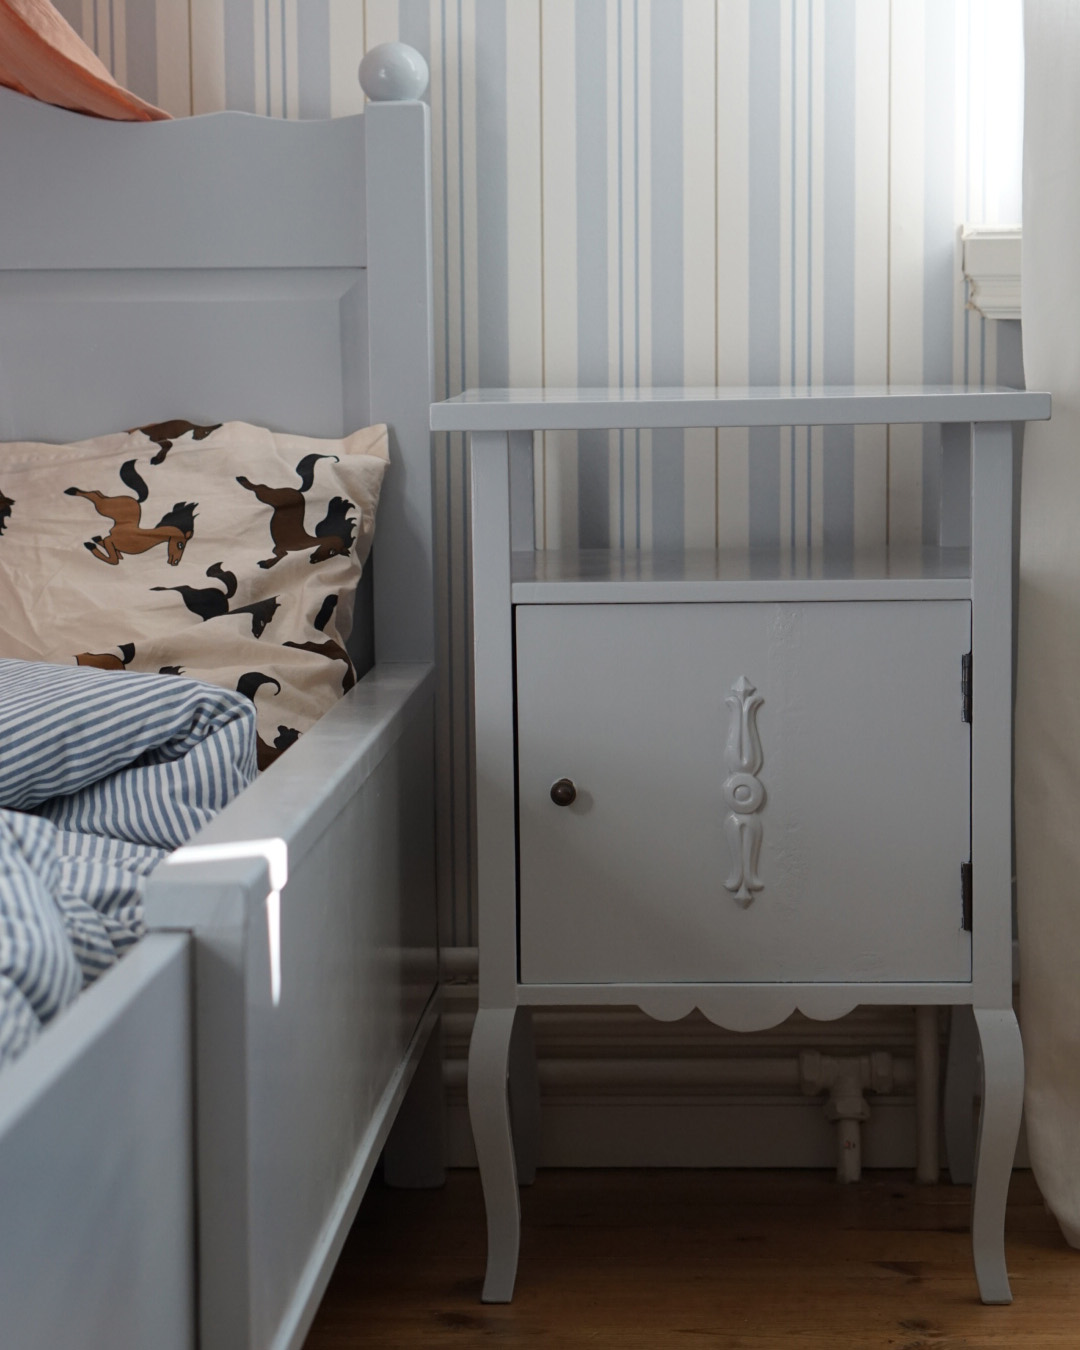 Ett barnrum med säng och sängbord gråmålade med snickerifärg från Auro.